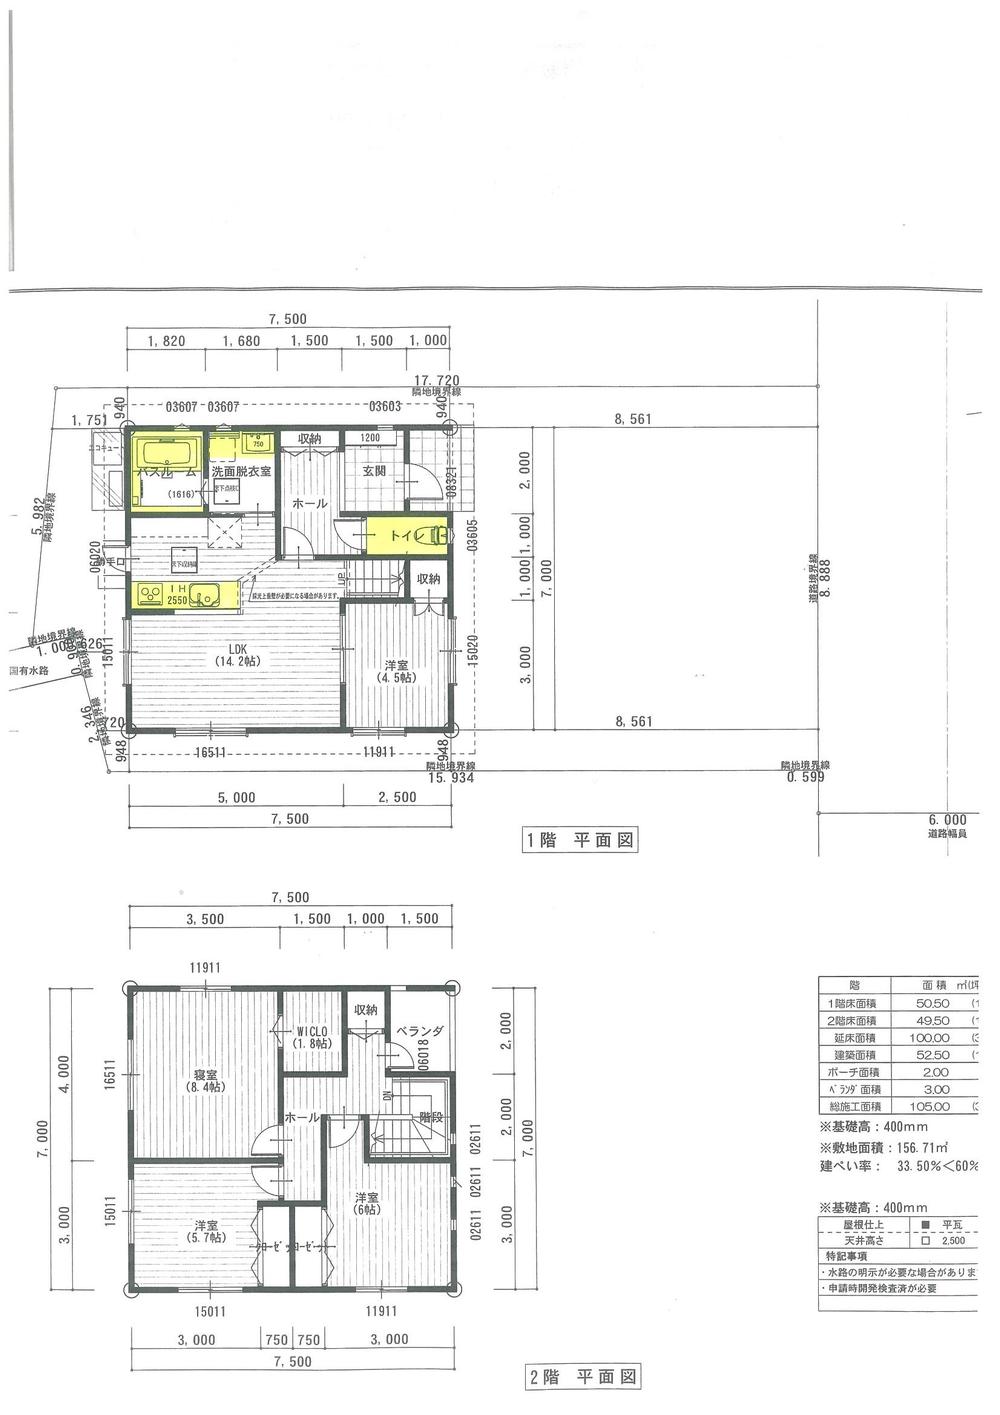 Floor plan. 16.8 million yen, 4LDK, Land area 156.74 sq m , Building area 100 sq m